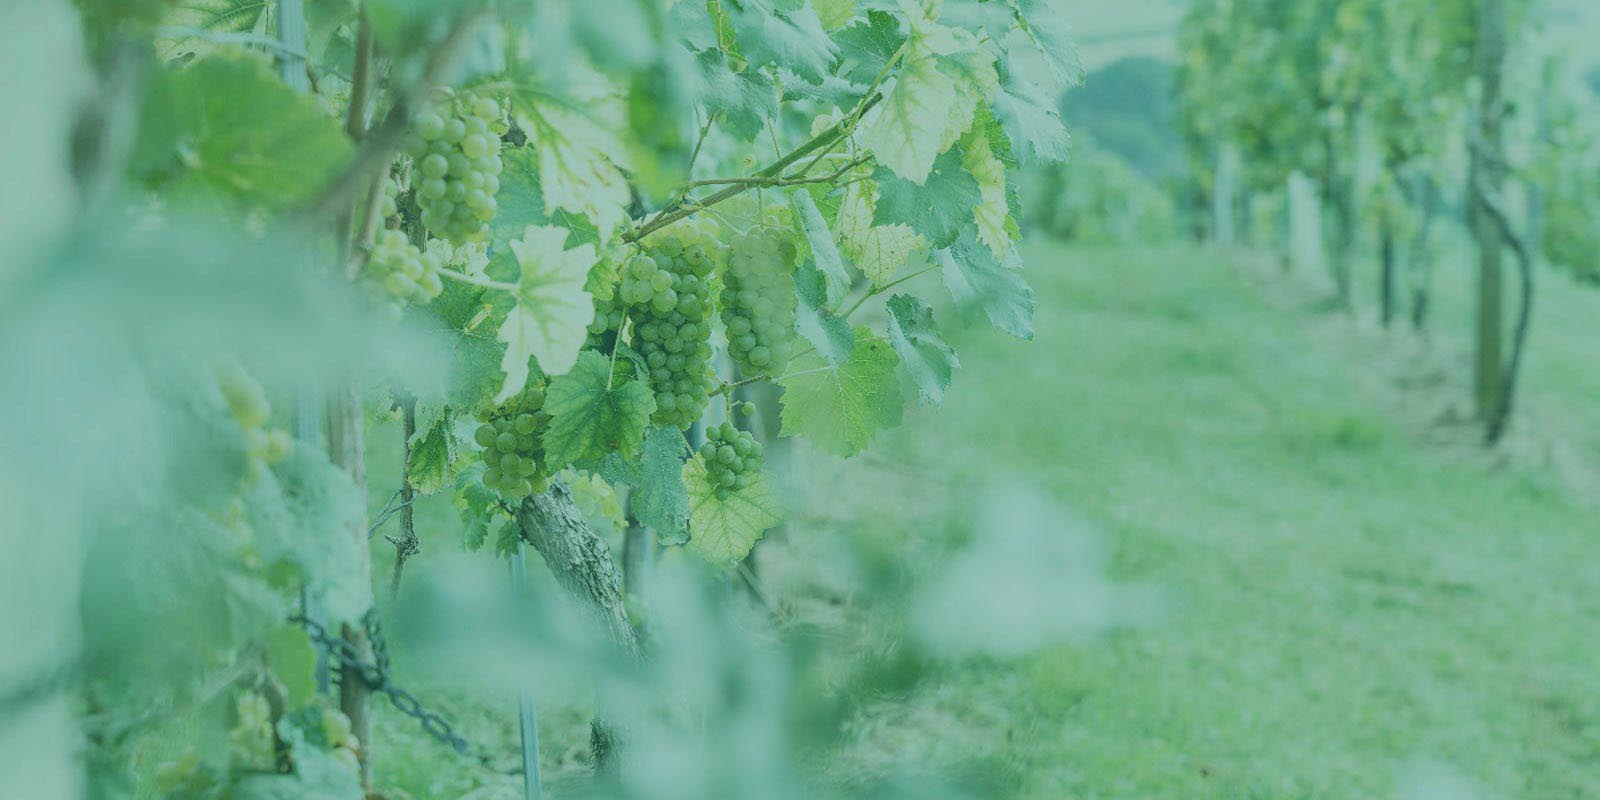 Trauben im Weingarten